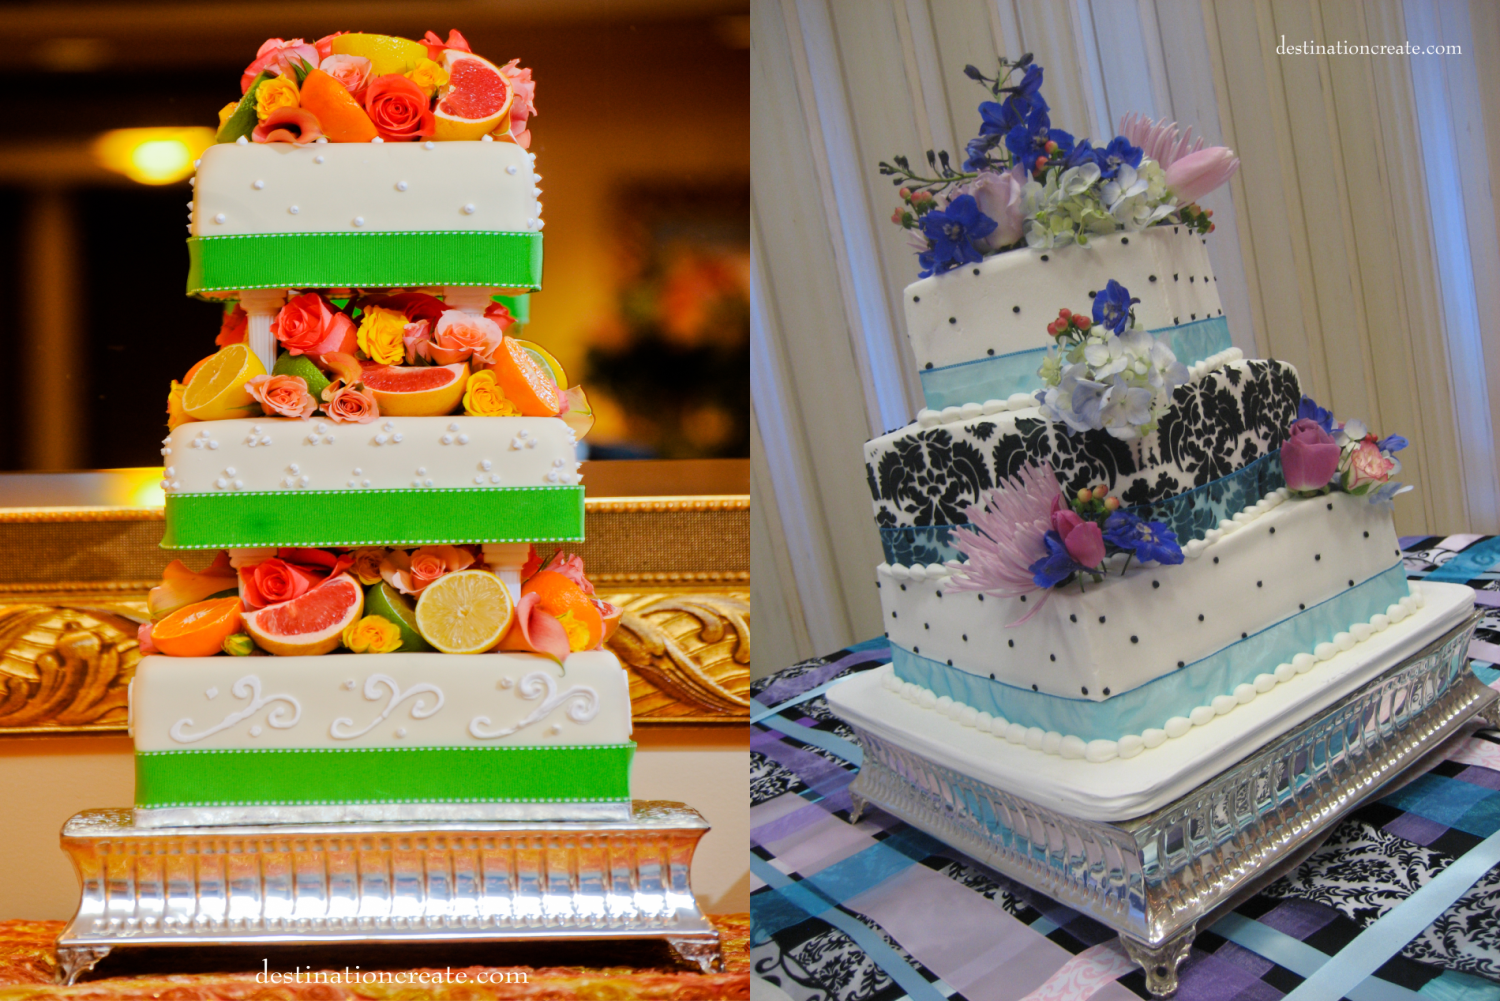 Wedding Decor Rentals Denver-cake stand